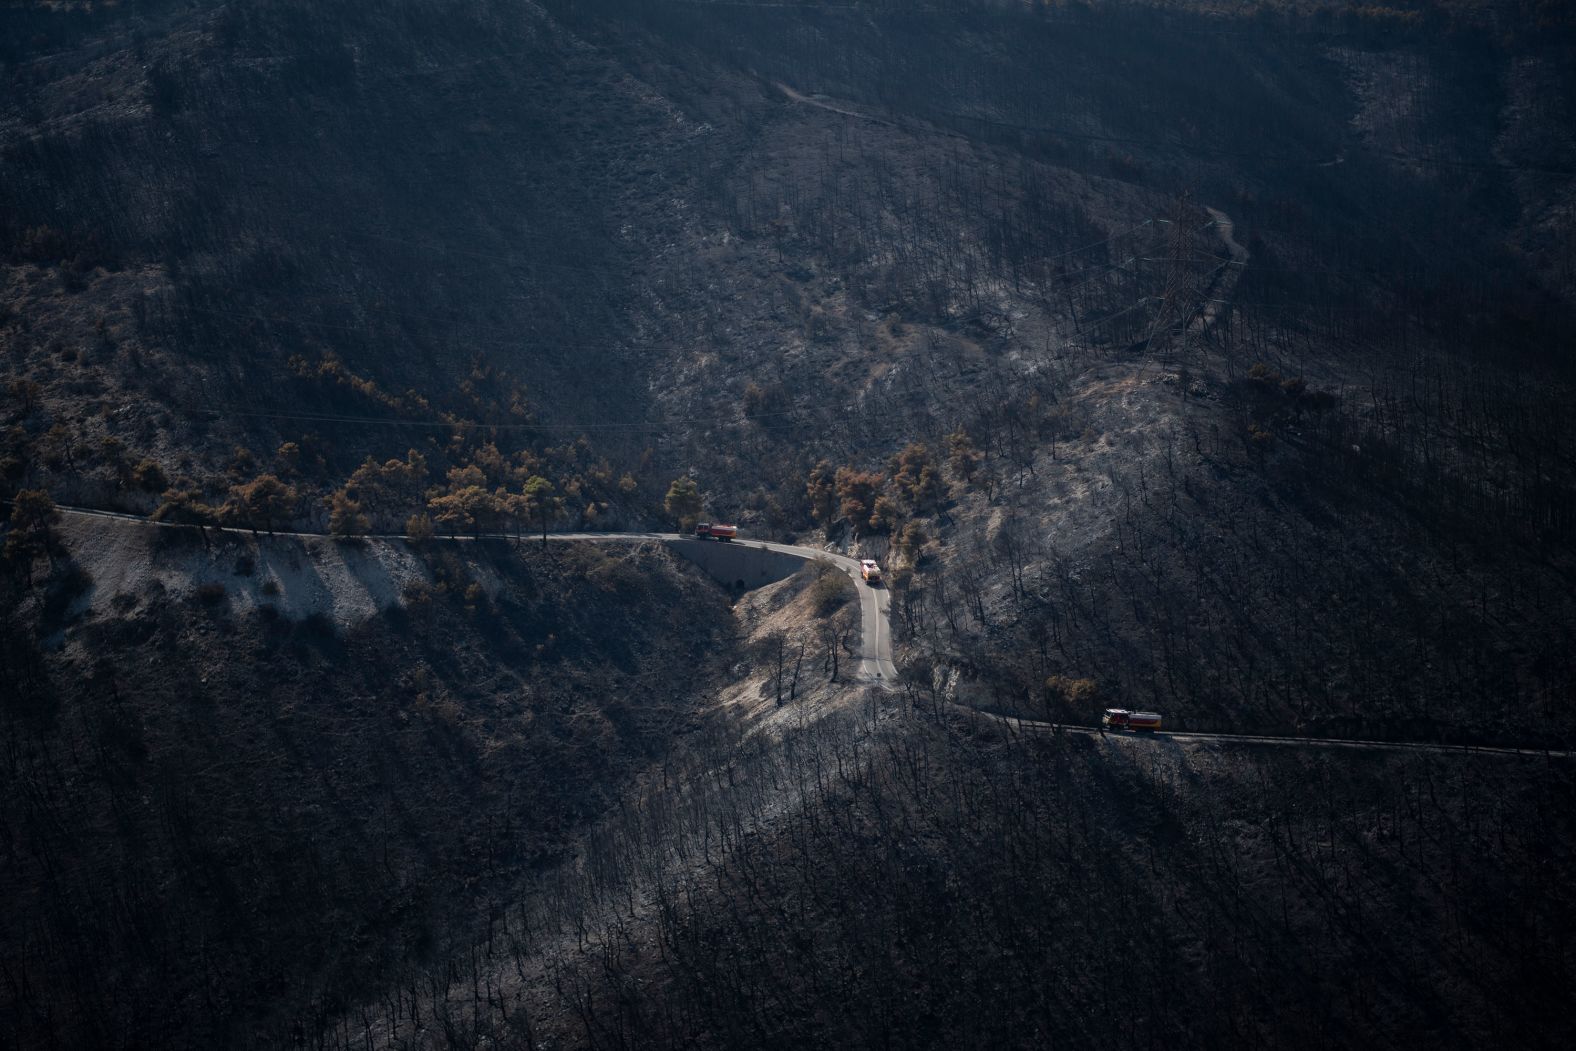 Firetrucks travel through a burned forest near Fyli on Friday, August 25.